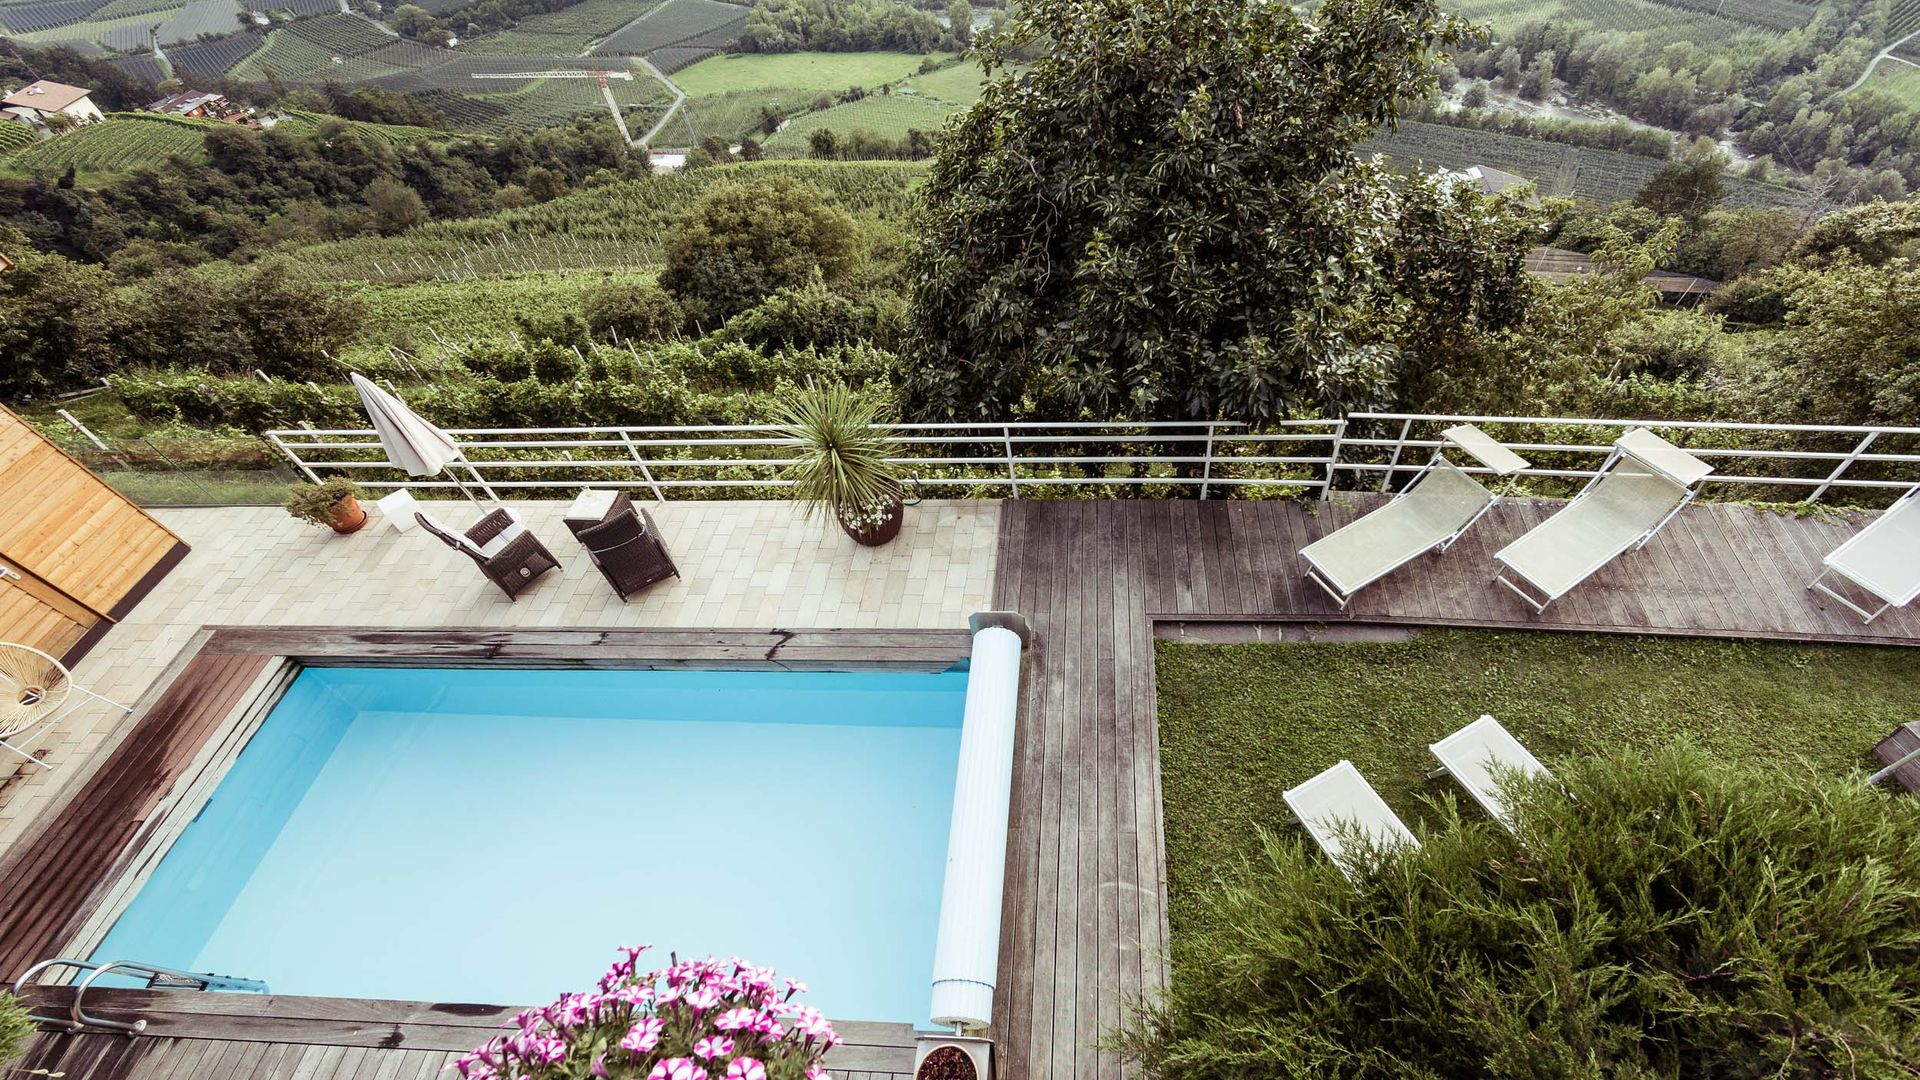 Giardino, sedie a sdraio, piscina all'aperto, vista panoramica sulla campagna di Merano.